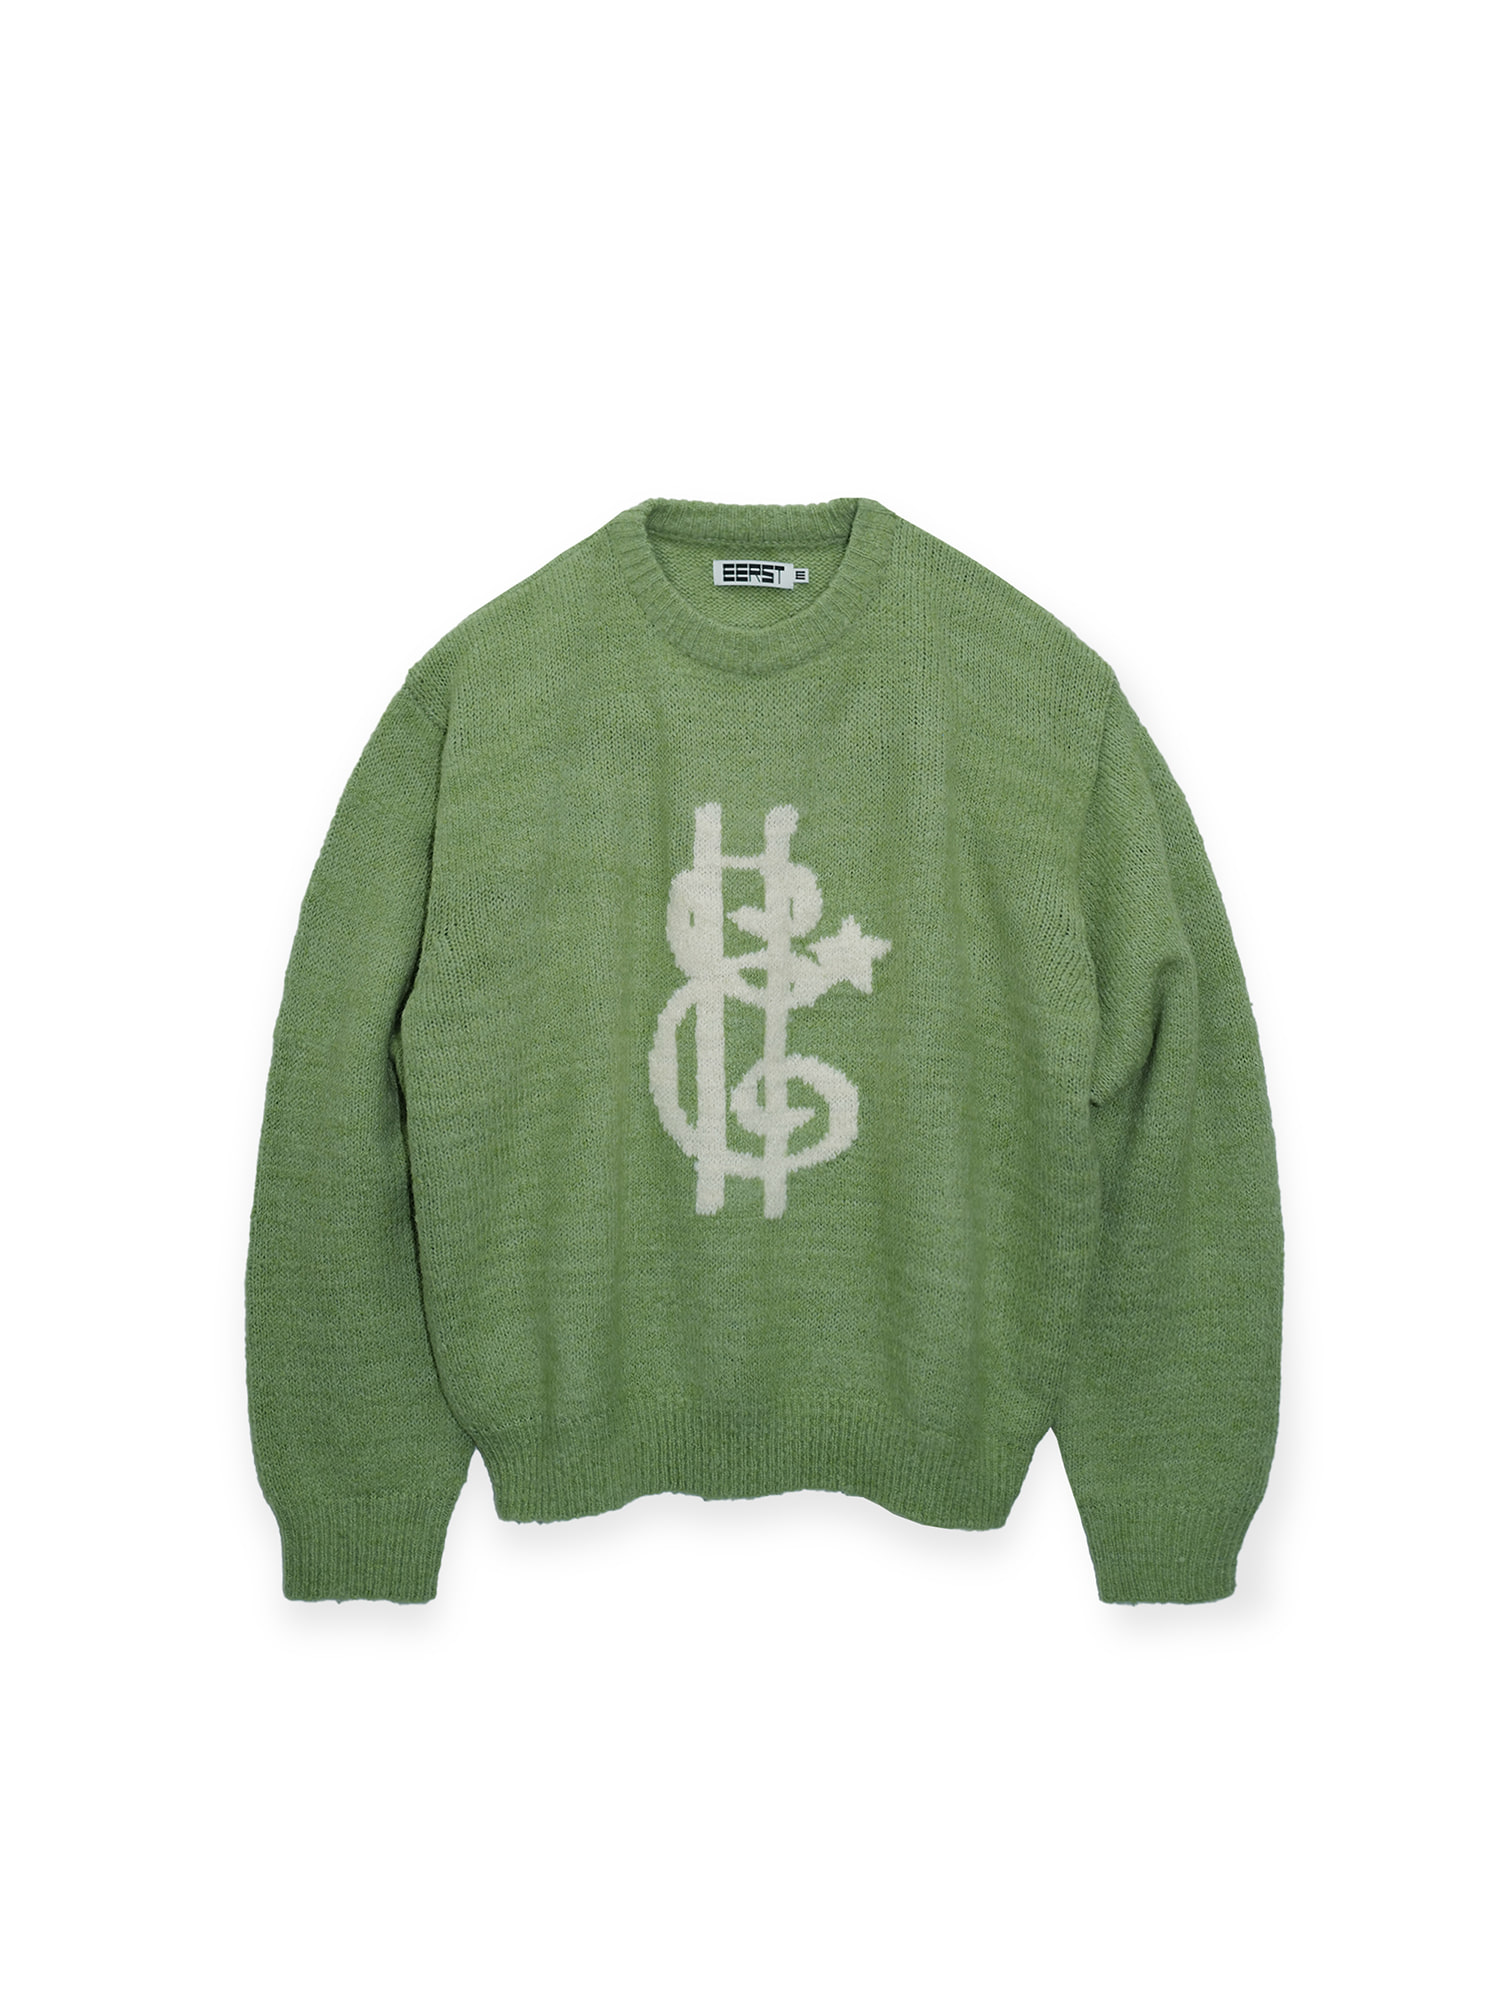 Sans-E Sweater - Pale Green